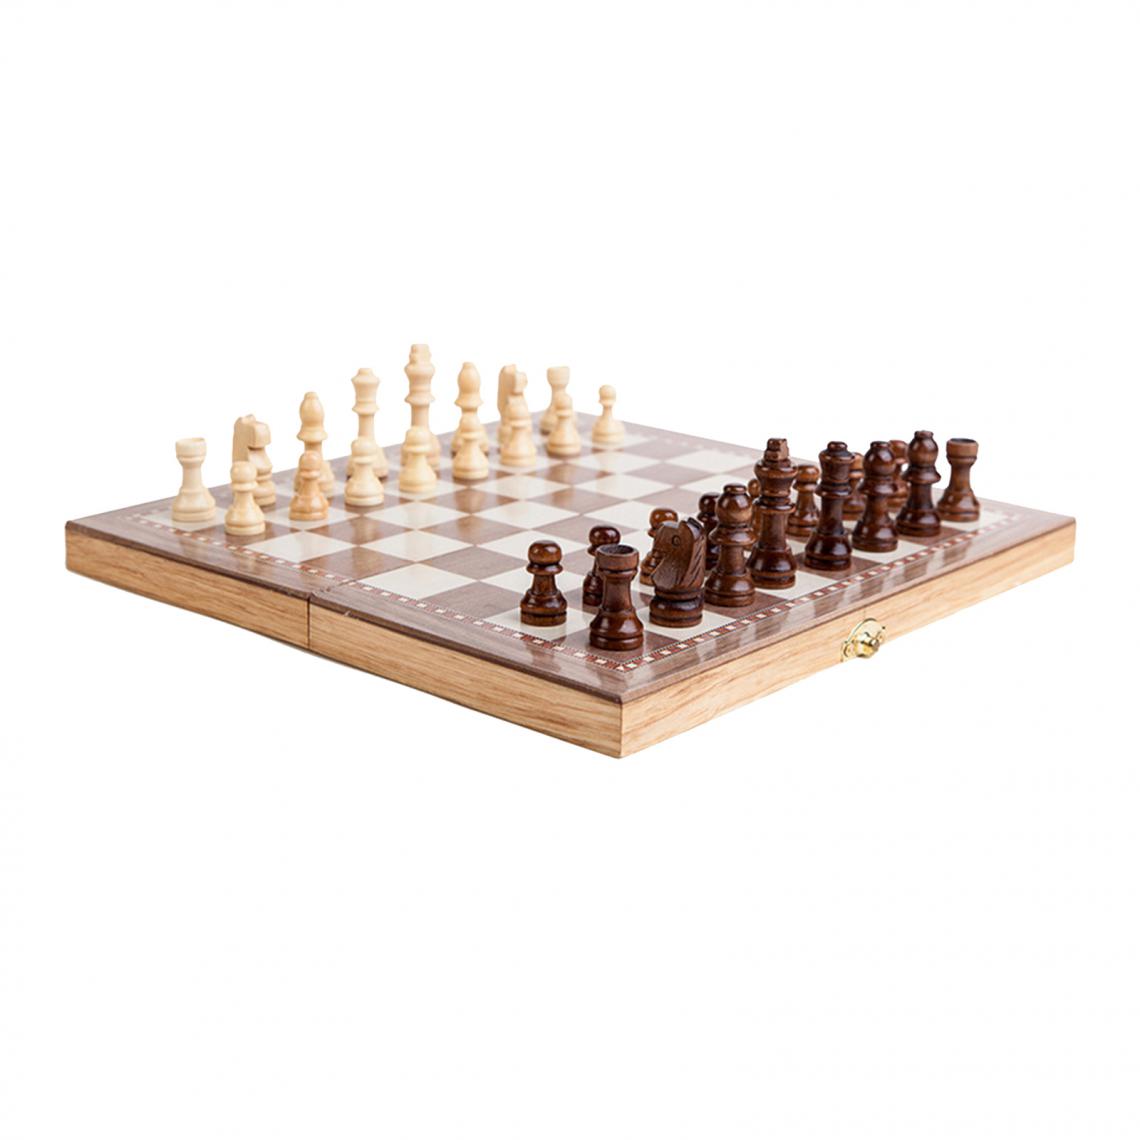 marque generique - Pliage Jeu de société En Bois Jeu d'échecs Échecs Dames Backgammon 3 dans 1 pour Accueil Voyage 11.8x11.8inch - Jeux de stratégie